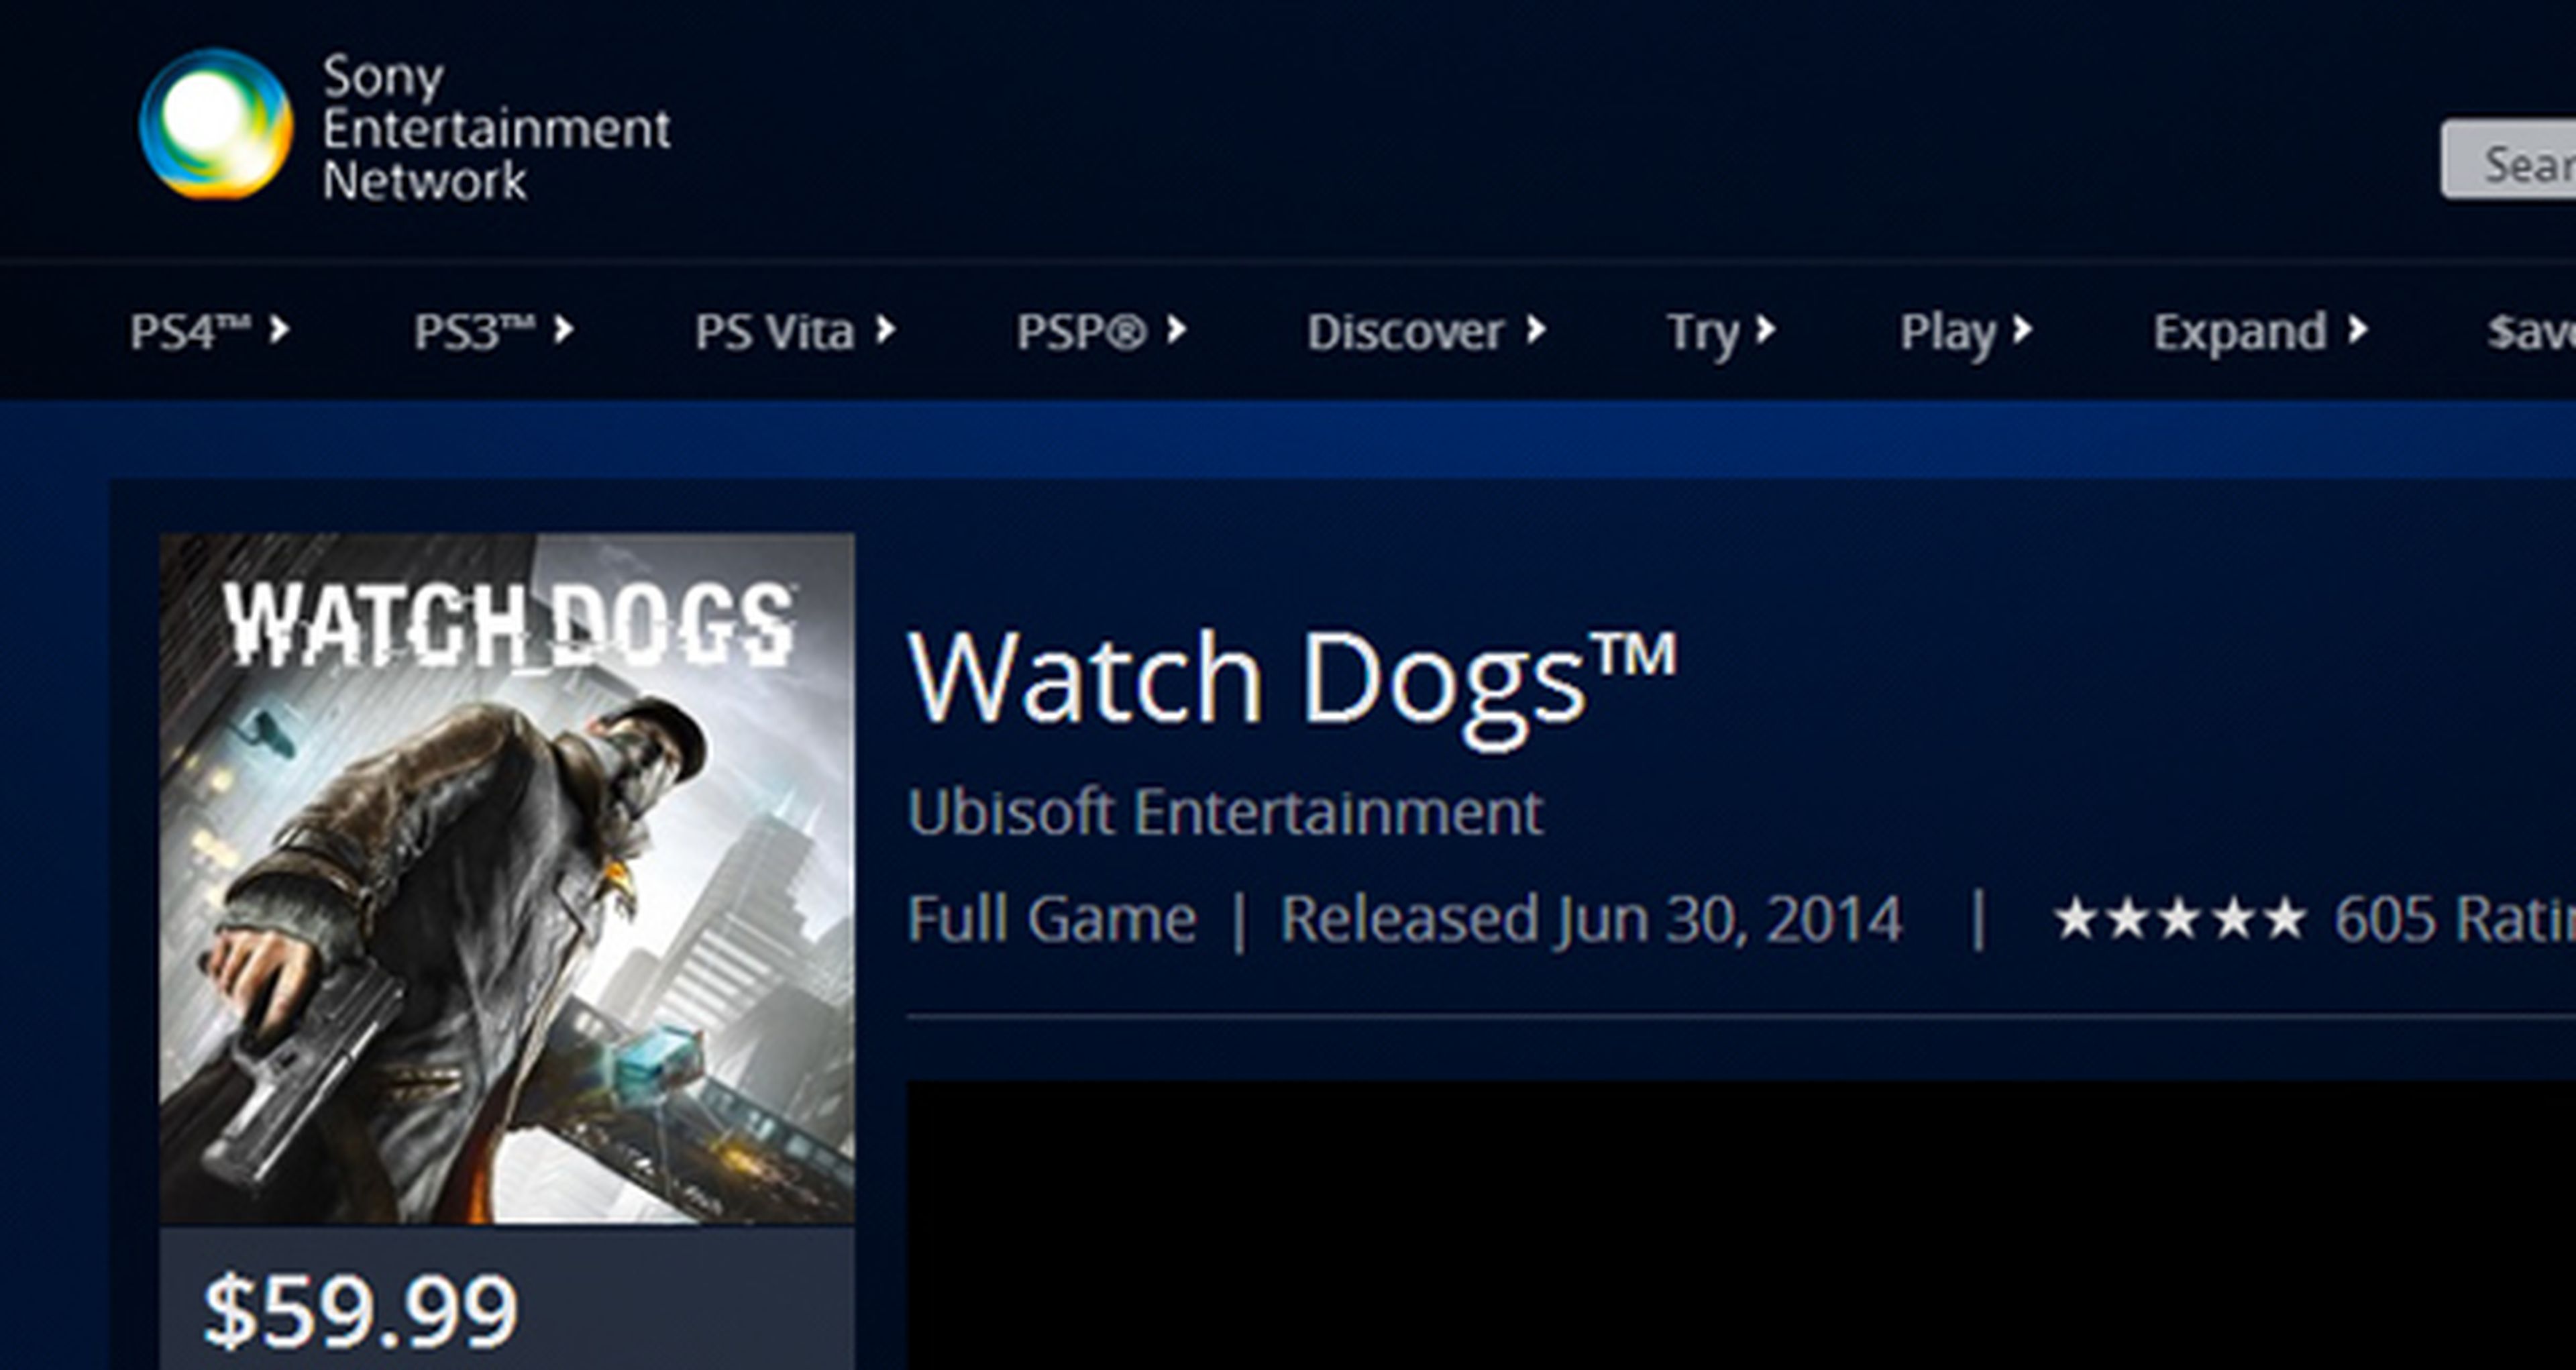 Fecha de lanzamiento de Watch Dogs anunciada en PSN